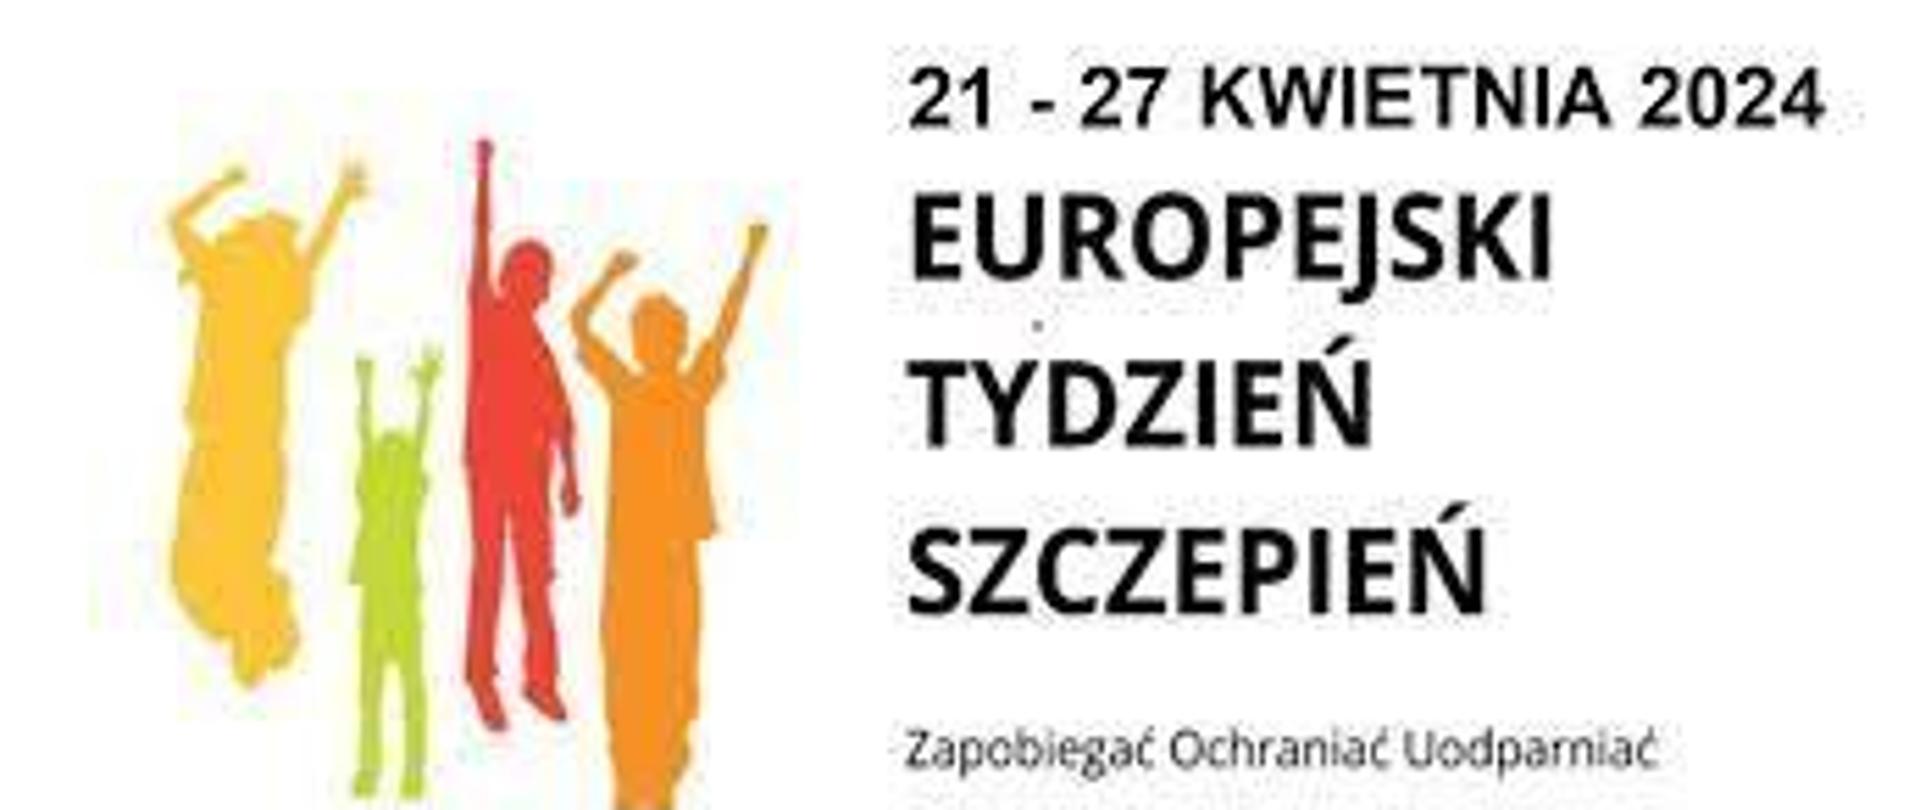 Europejski Tydzień Szczepień 21.04-27.04.2024 r.